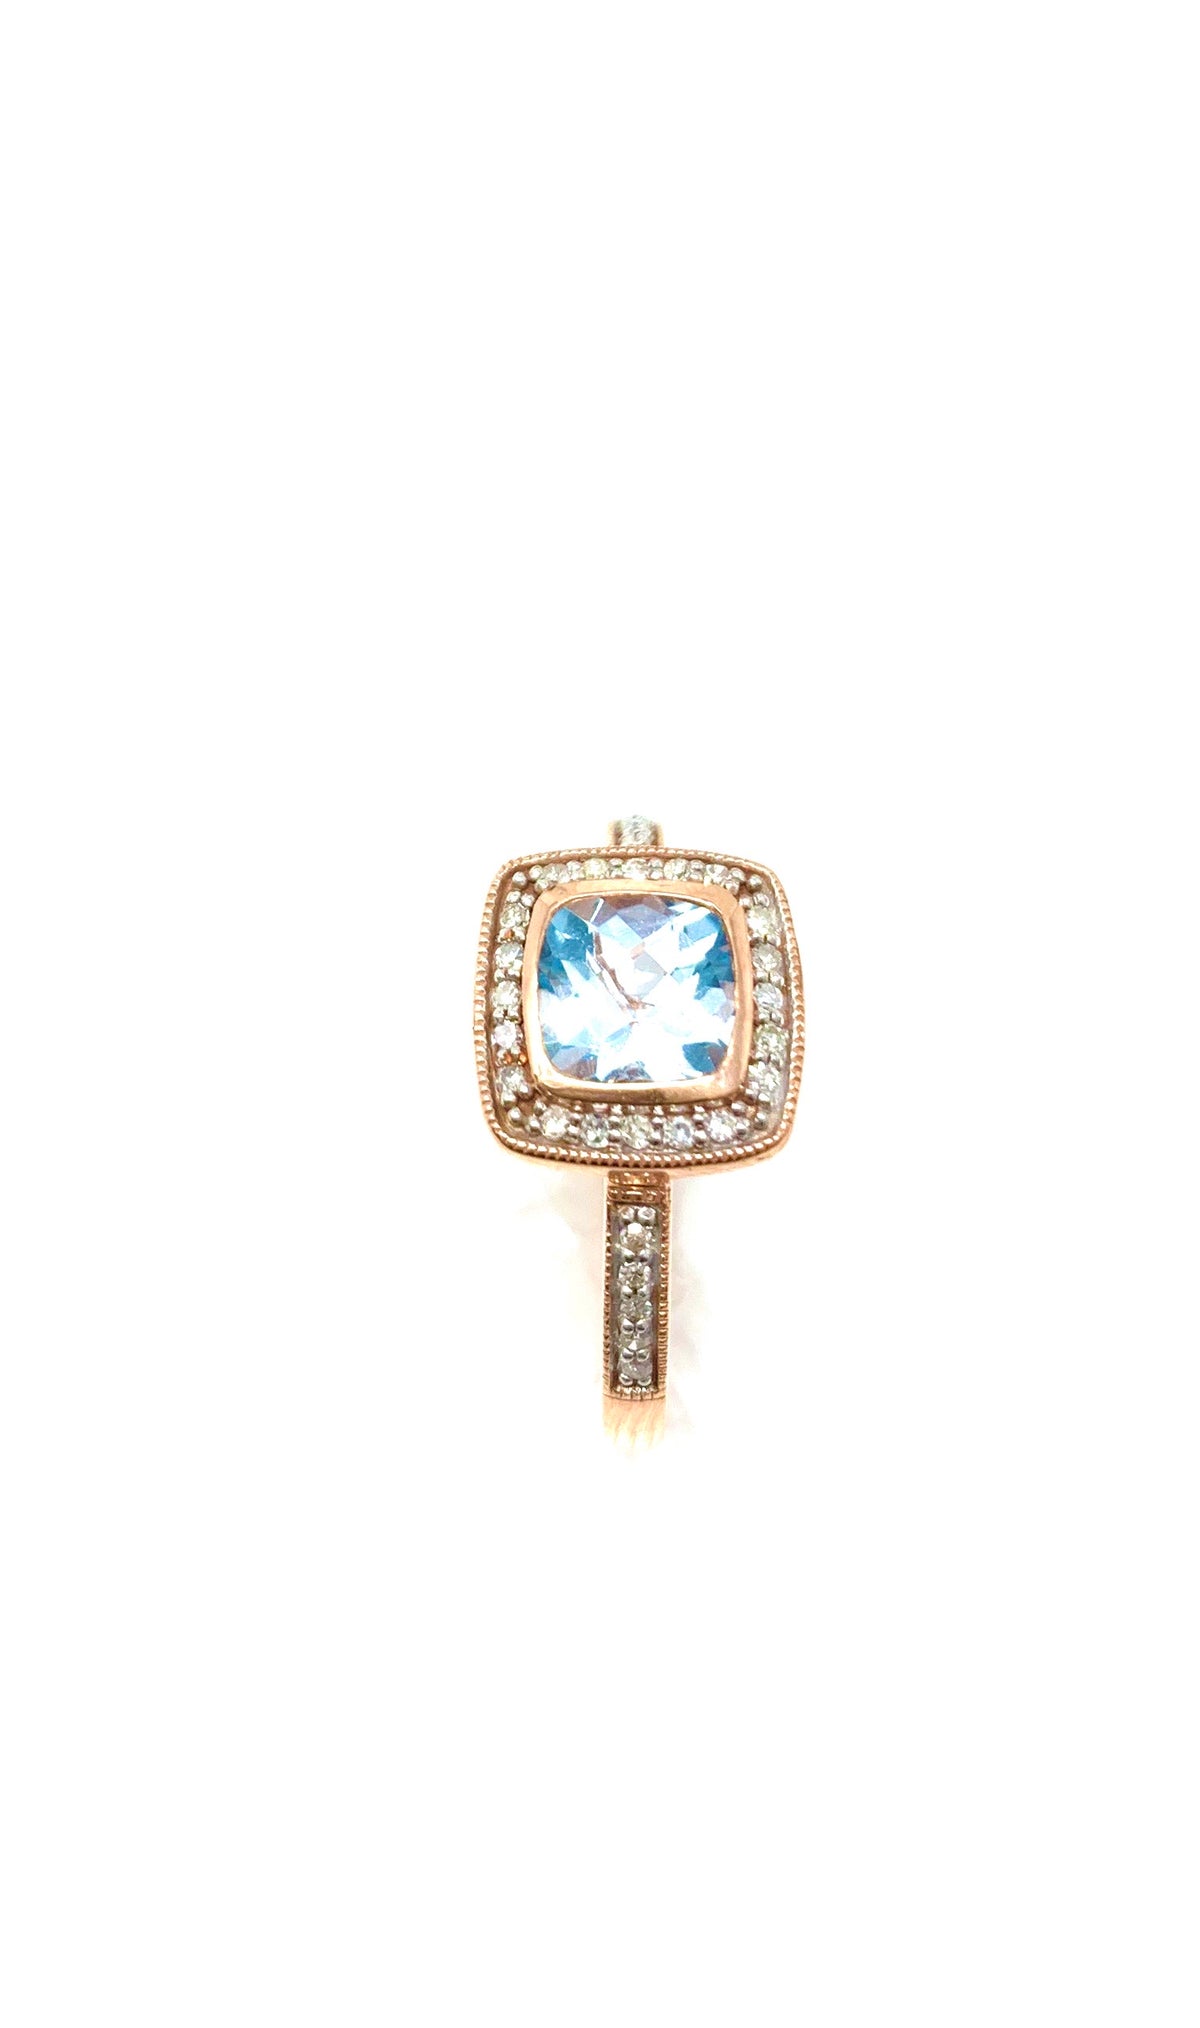 10K Rose Gold BLue Topaz &amp; Diamond Ring- Size 6.5